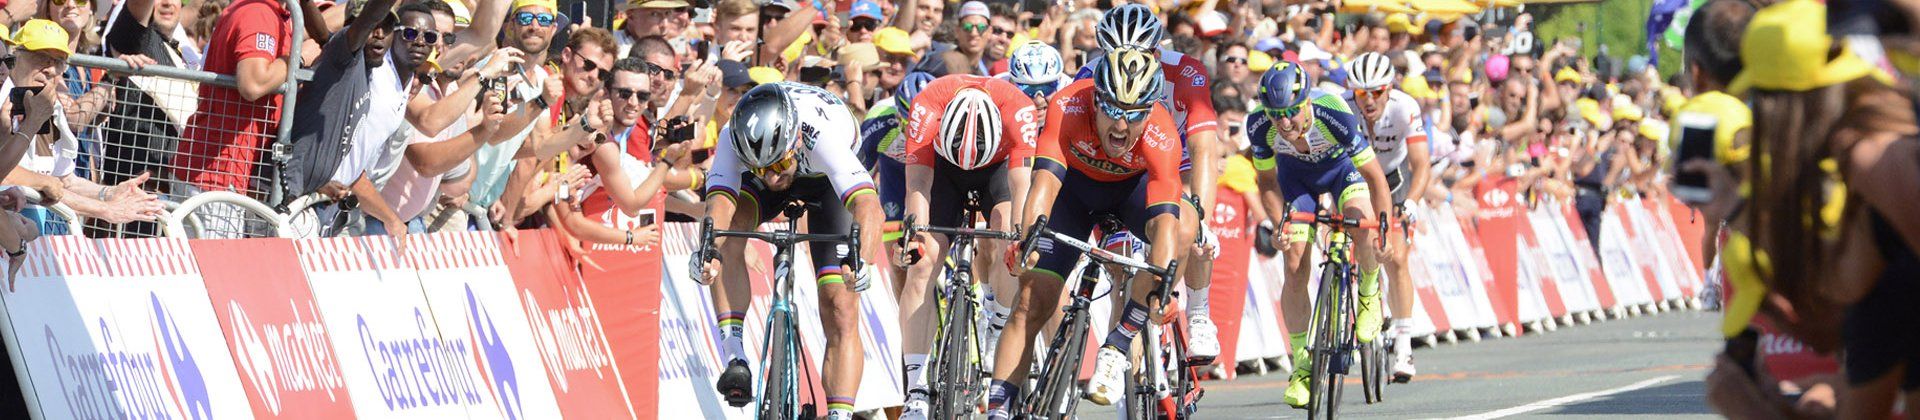 Tour de France 2018 Etape 2, Mouilleron-Saint-Germain / La Roche sur Yon